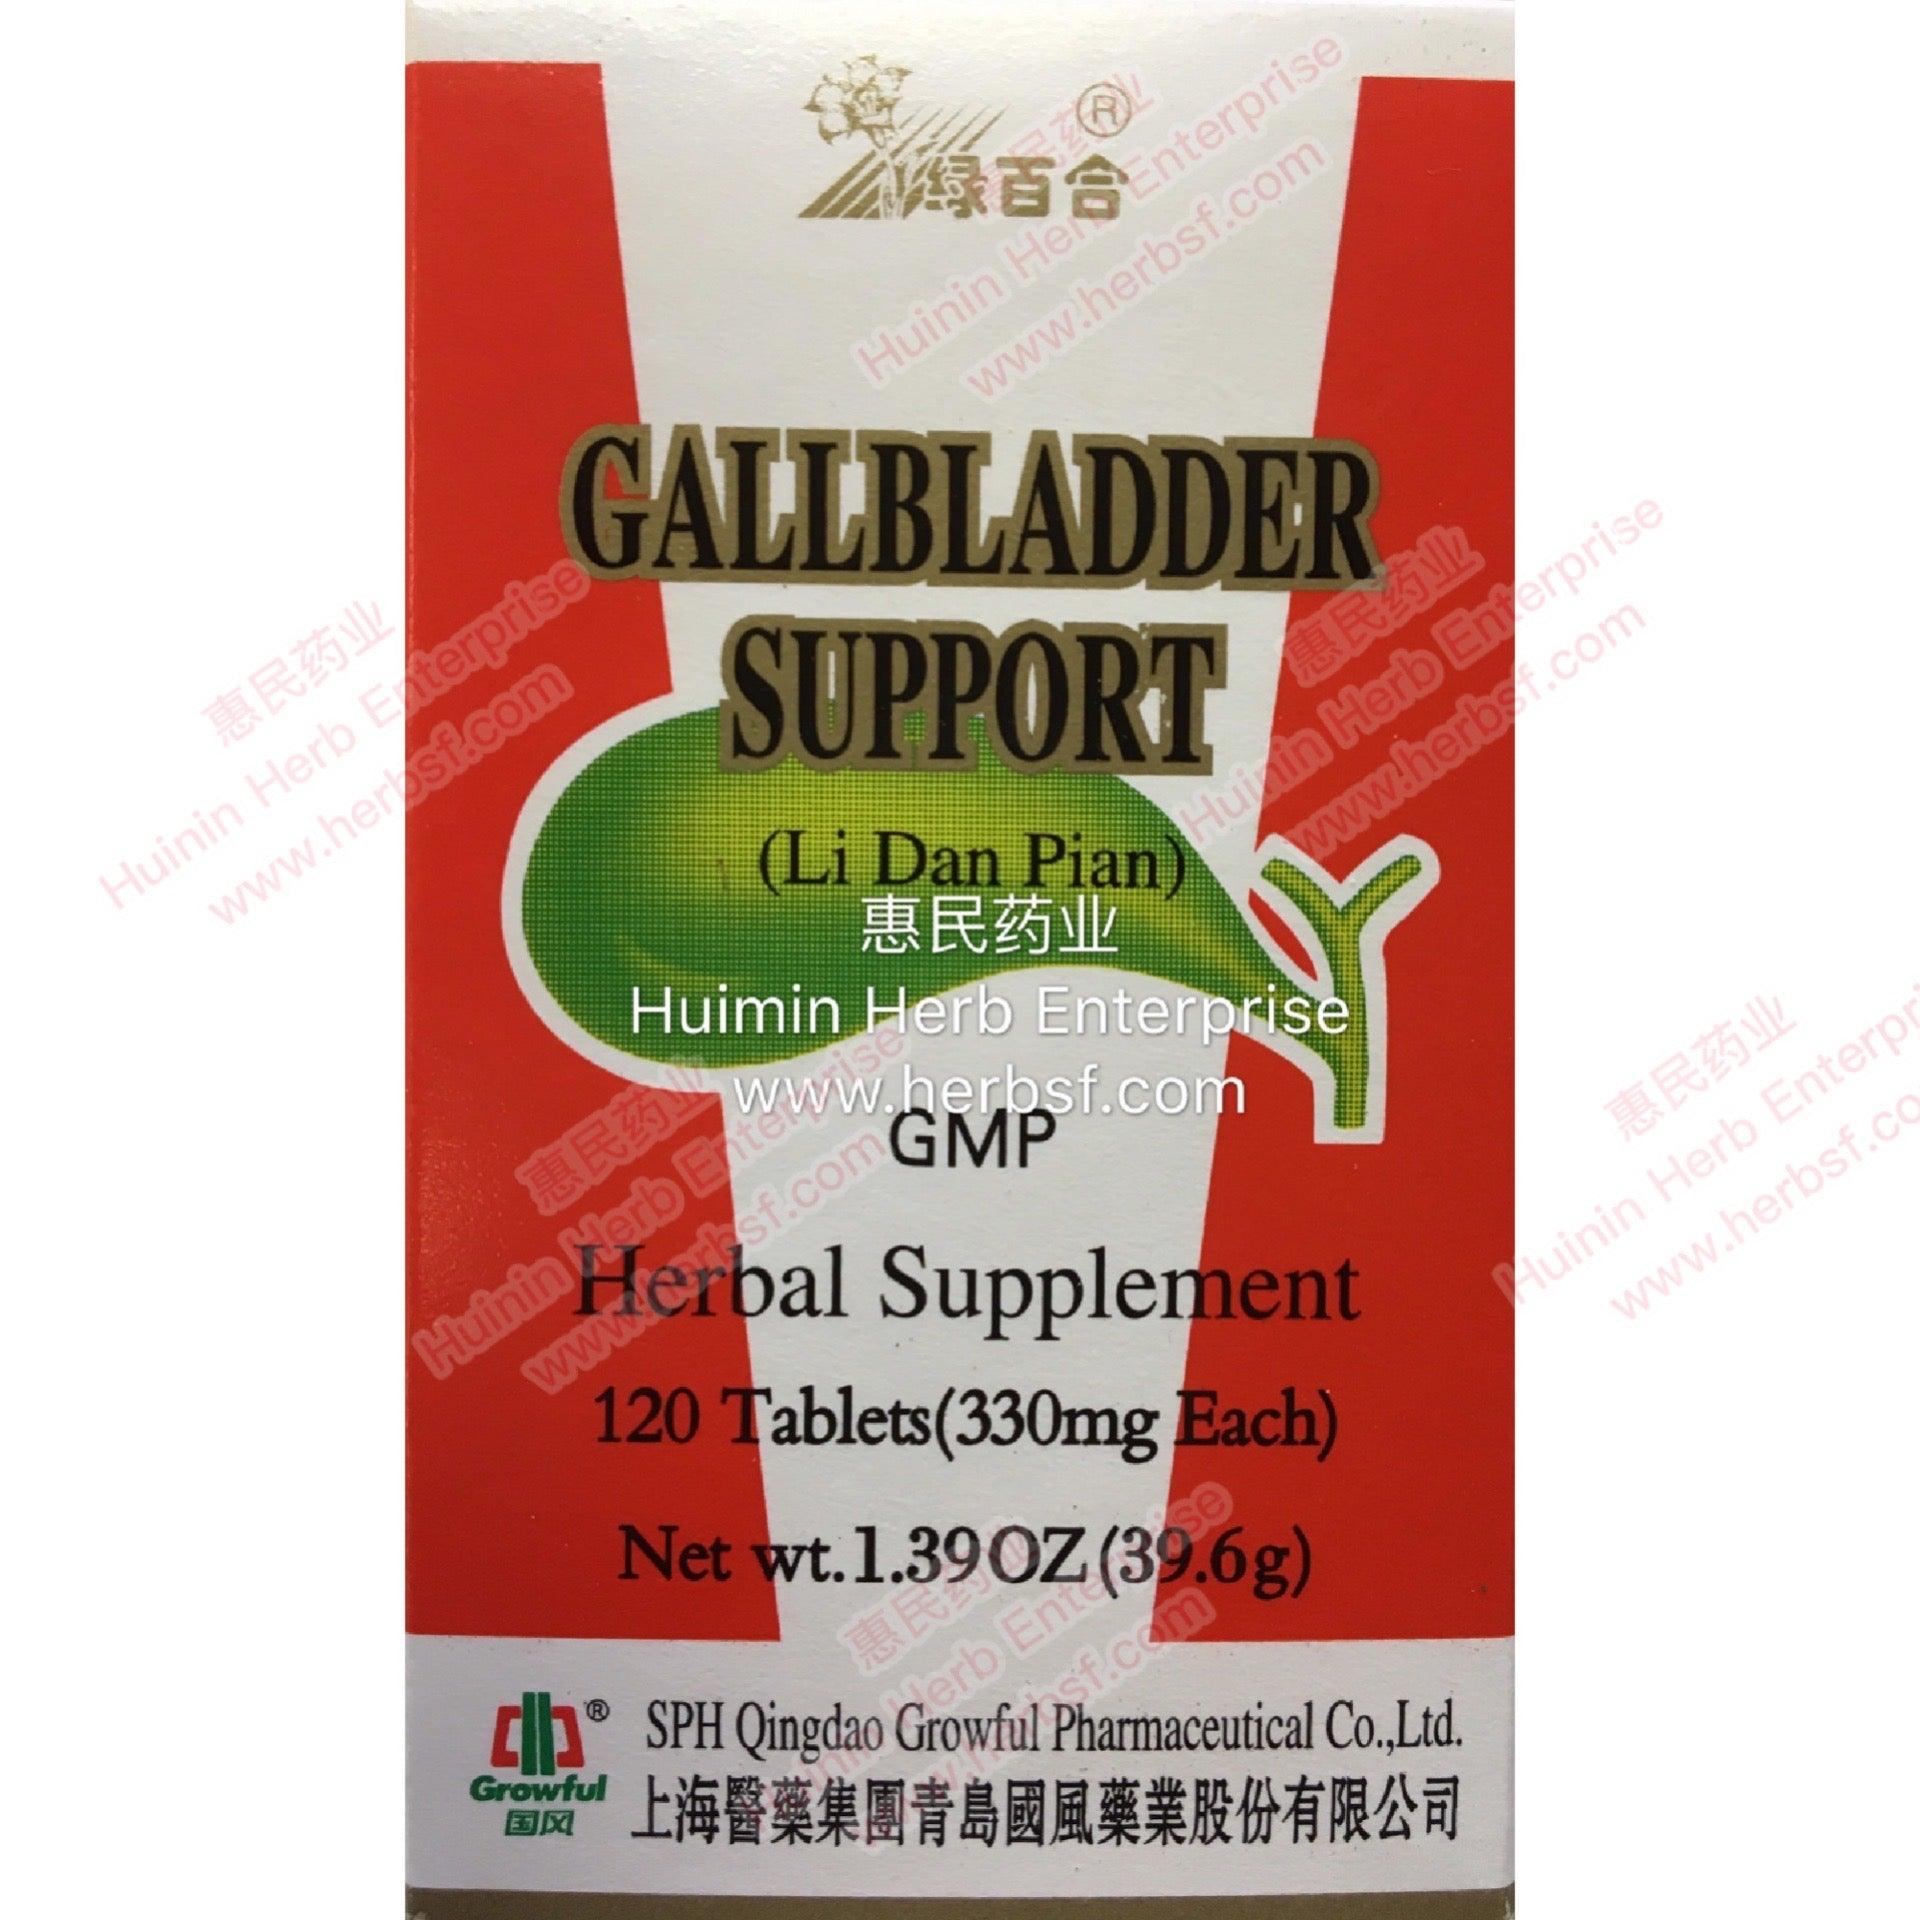 Gallbladder Support Formula (Li Dan Pian) (120 Tablets) - Huimin Herb Online, LLC